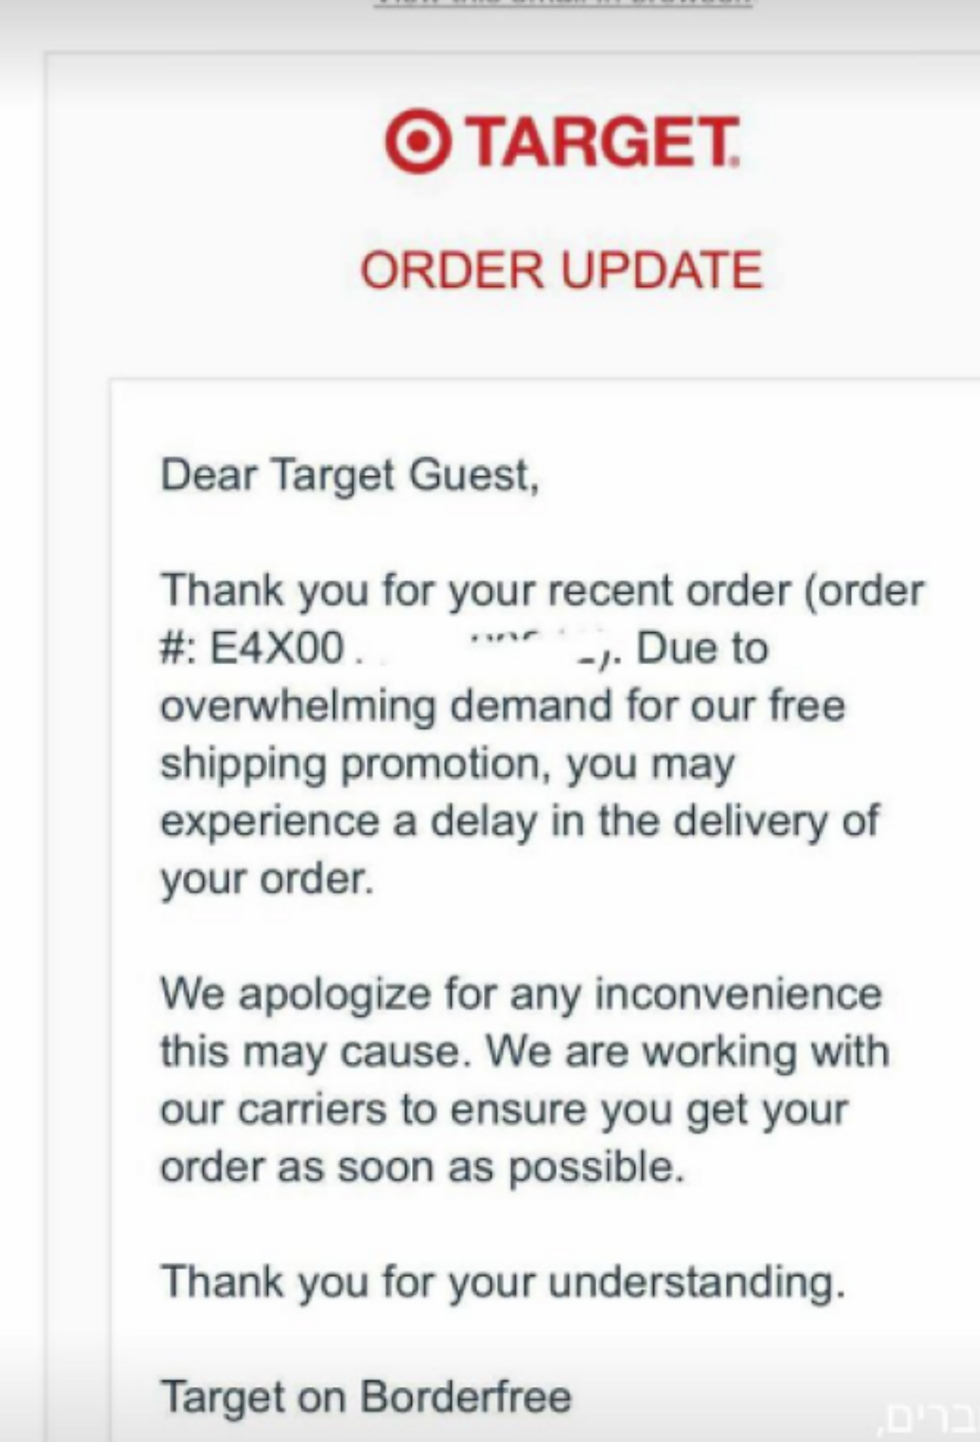 מייל שנשלח השבוע ללקוחות ובו התנצלות על עיכובים. מתוך קבוצת הפייסבוק INeeditIL ()